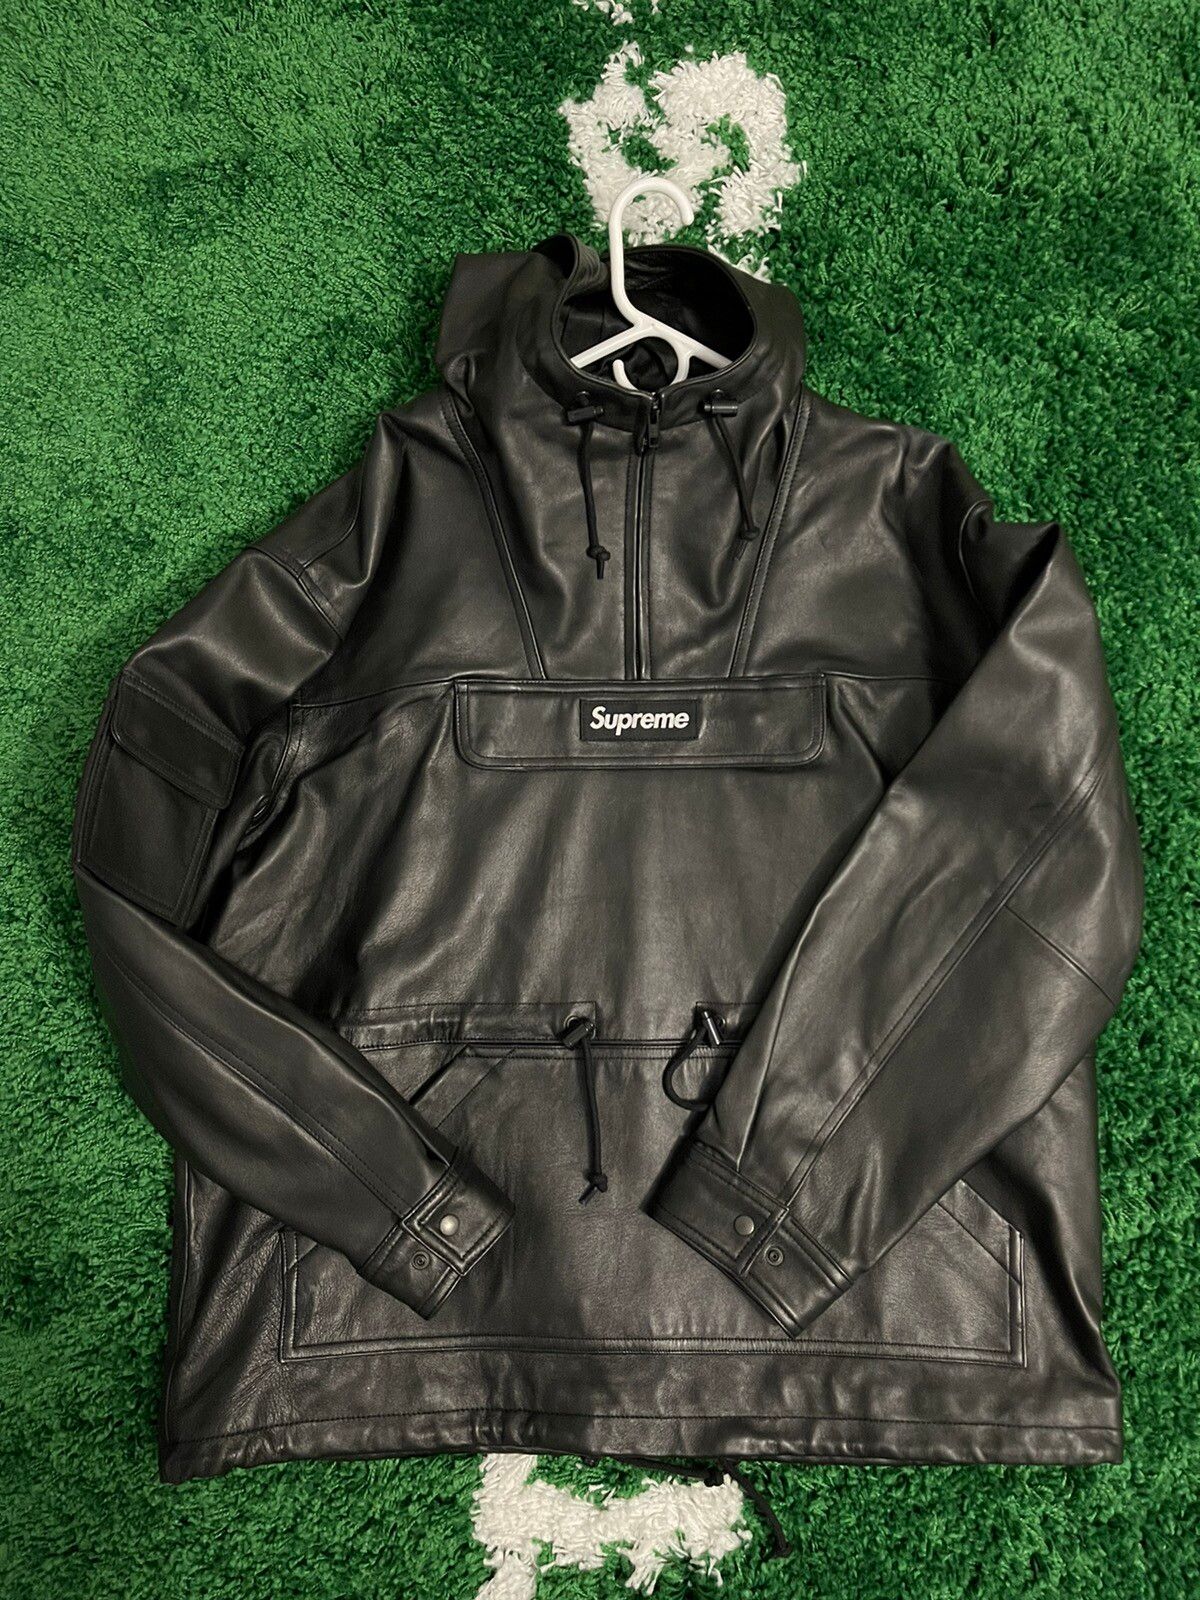 Supreme Supreme Leather Anorak Jacket | Grailed